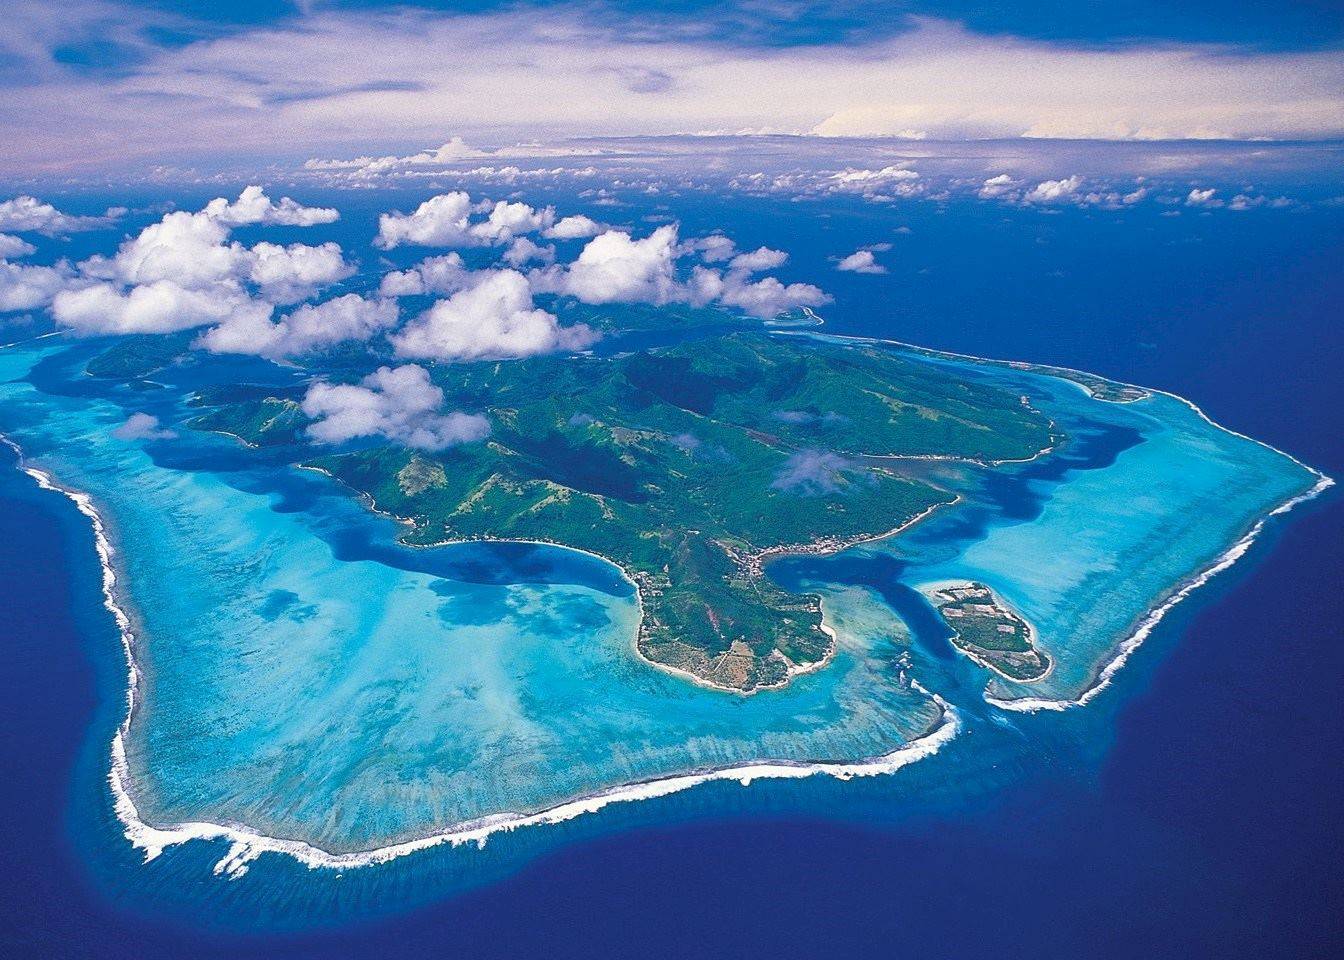 由向风群岛和背风群岛组成的社会群岛,土阿莫土群岛, 甘比尔群岛,马克